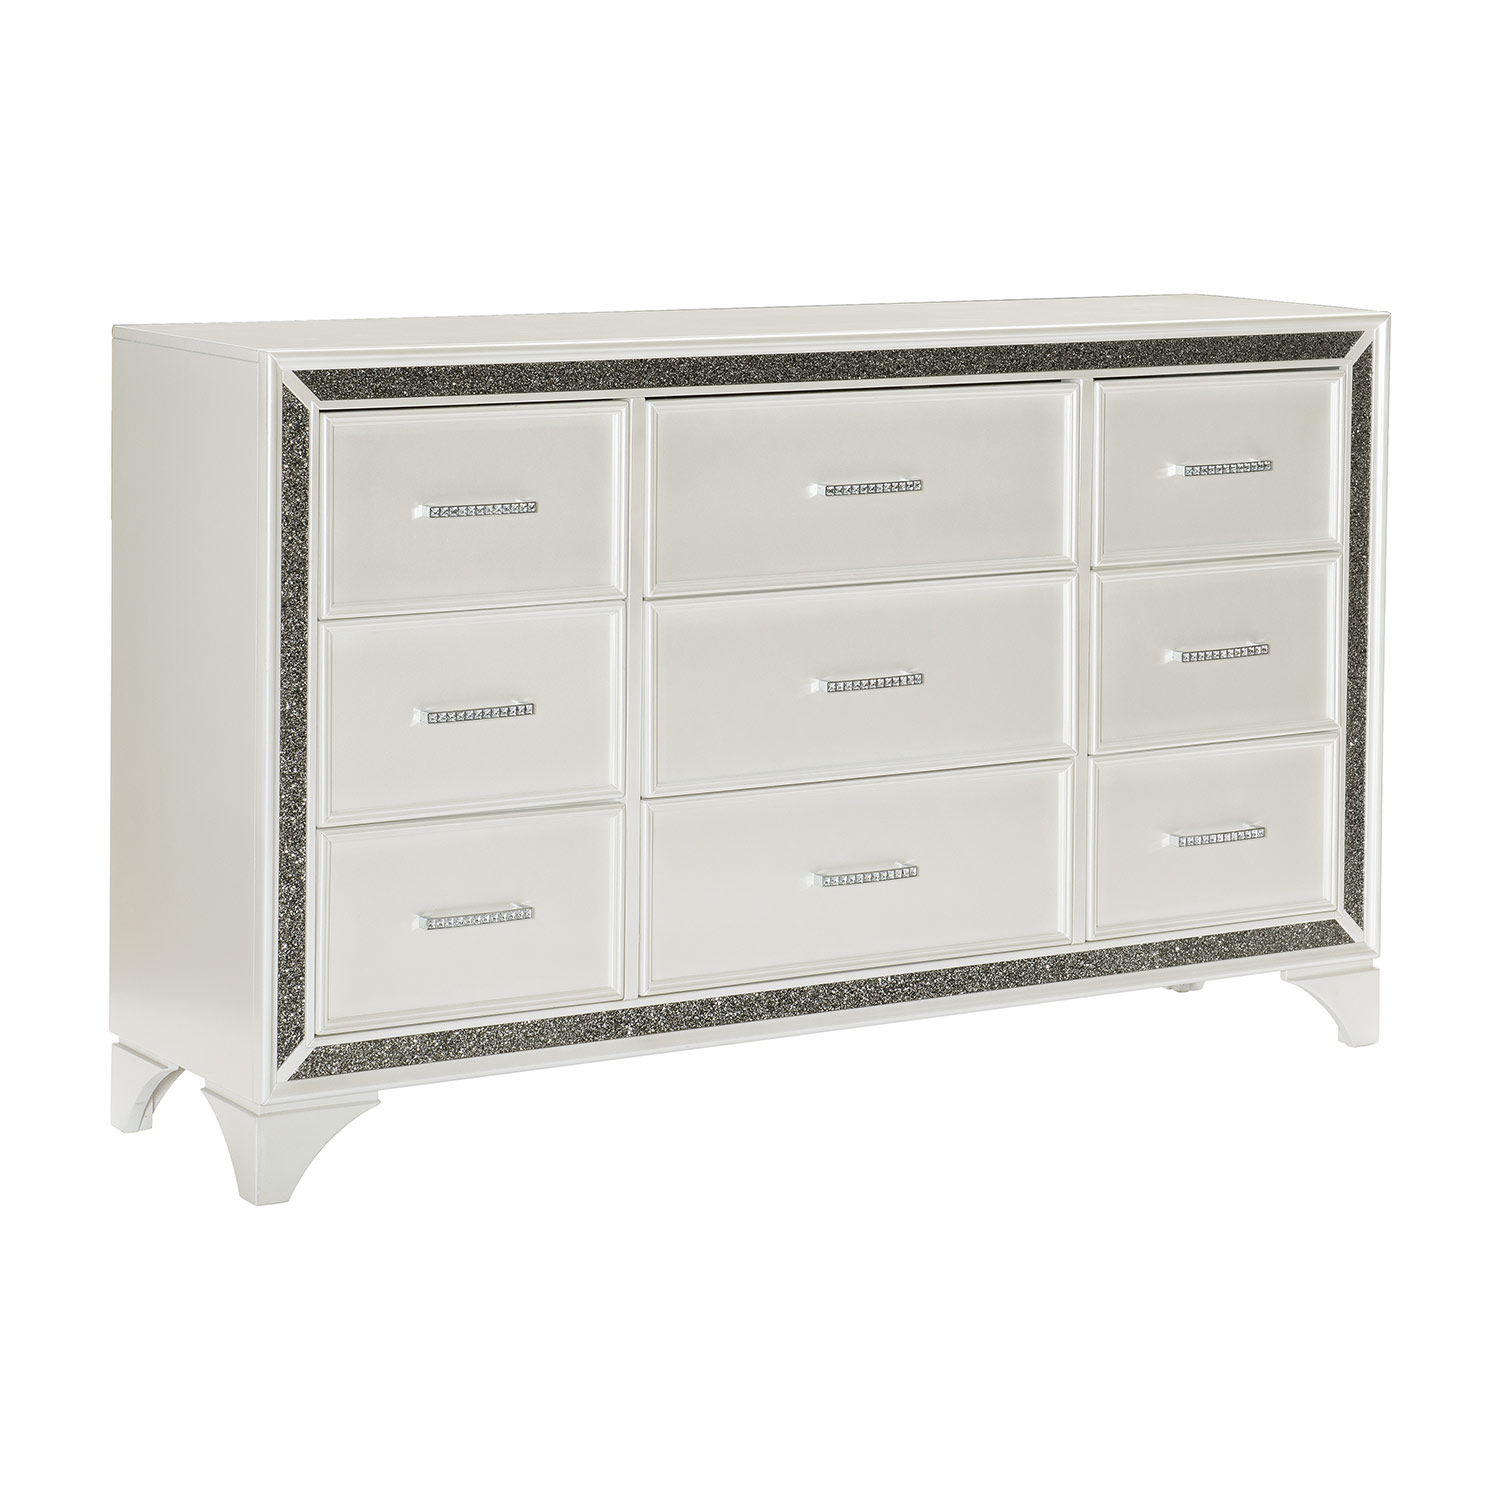 Homelegance Salon Dresser - White Pearlescent